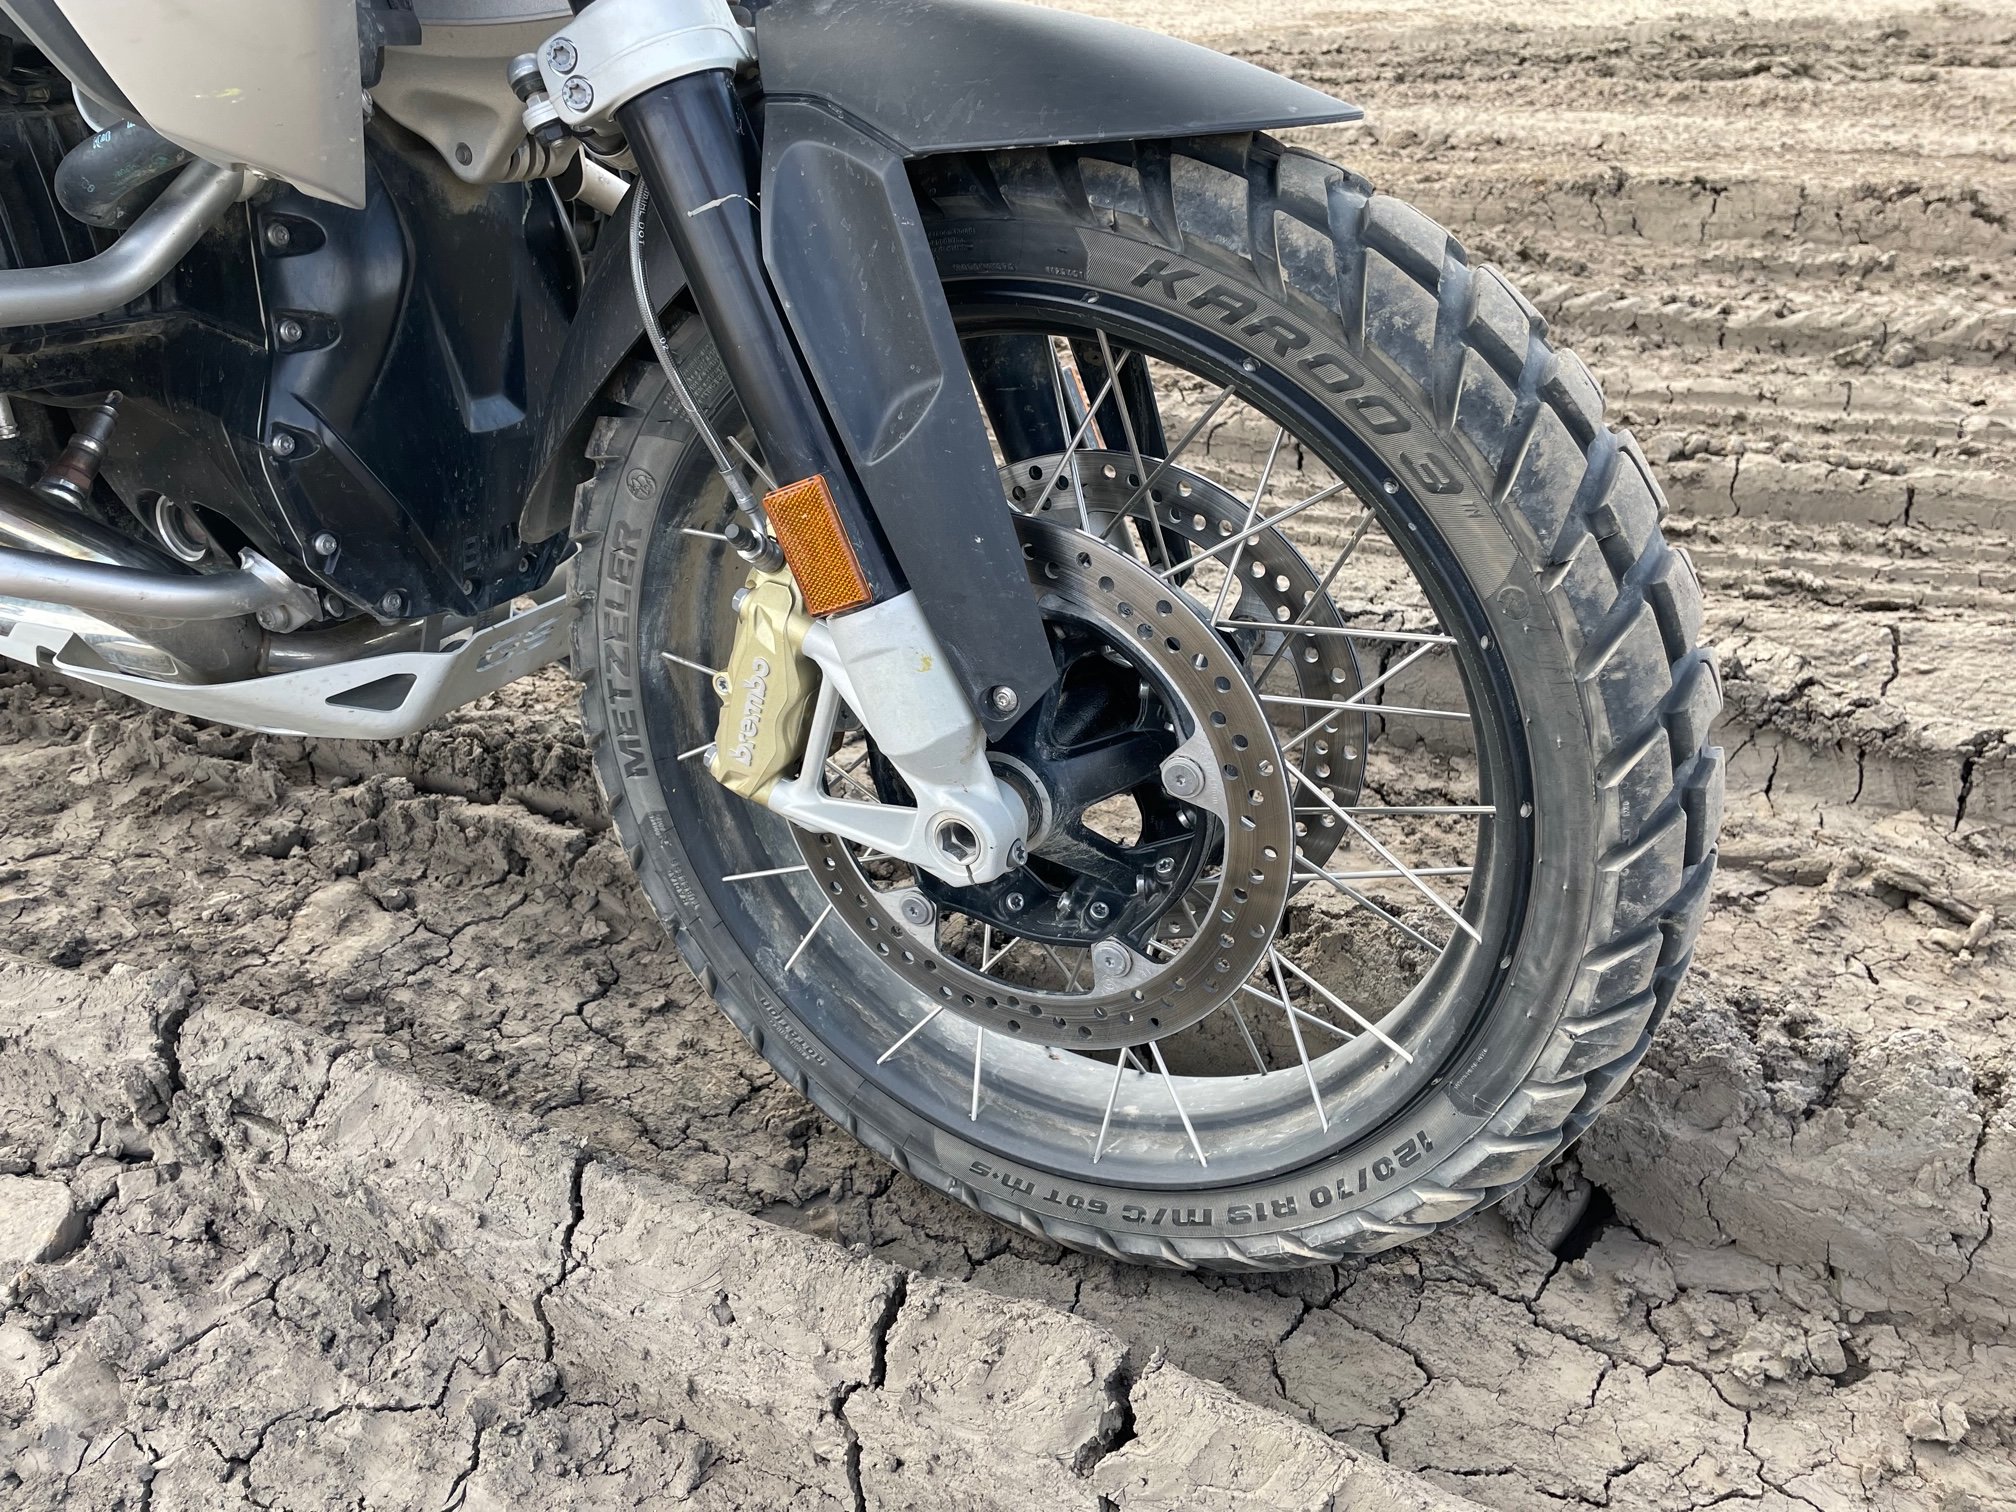 Motorcycle wheel in deep dried mud ruts.